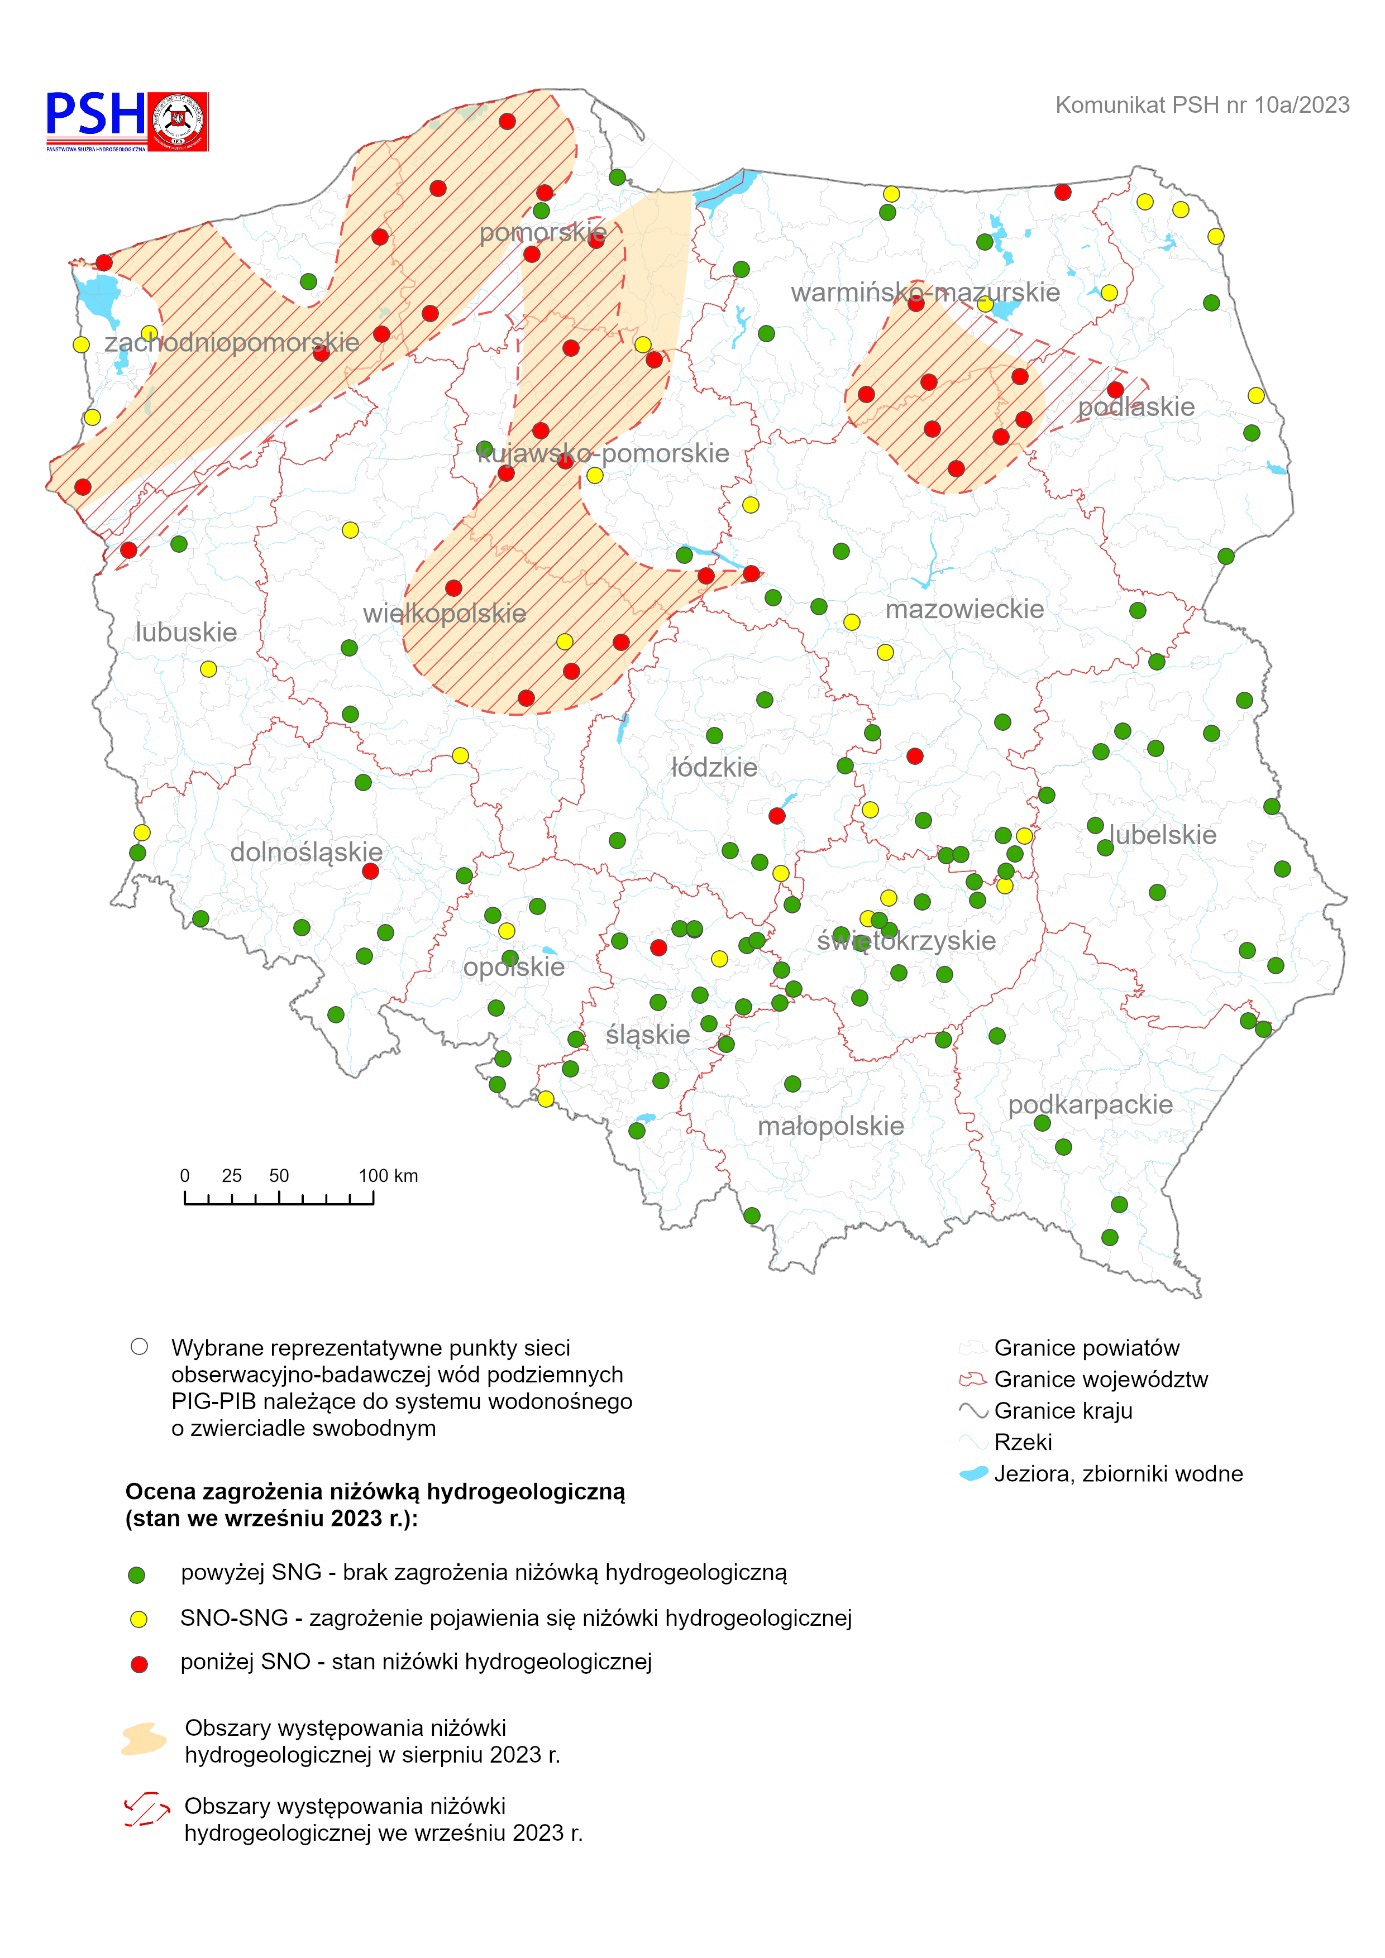 ilustracja, mapa Polski z zaznaczoną oceną zagrożenia niżówką hydrogeologiczną we wrześniu 2023 r.